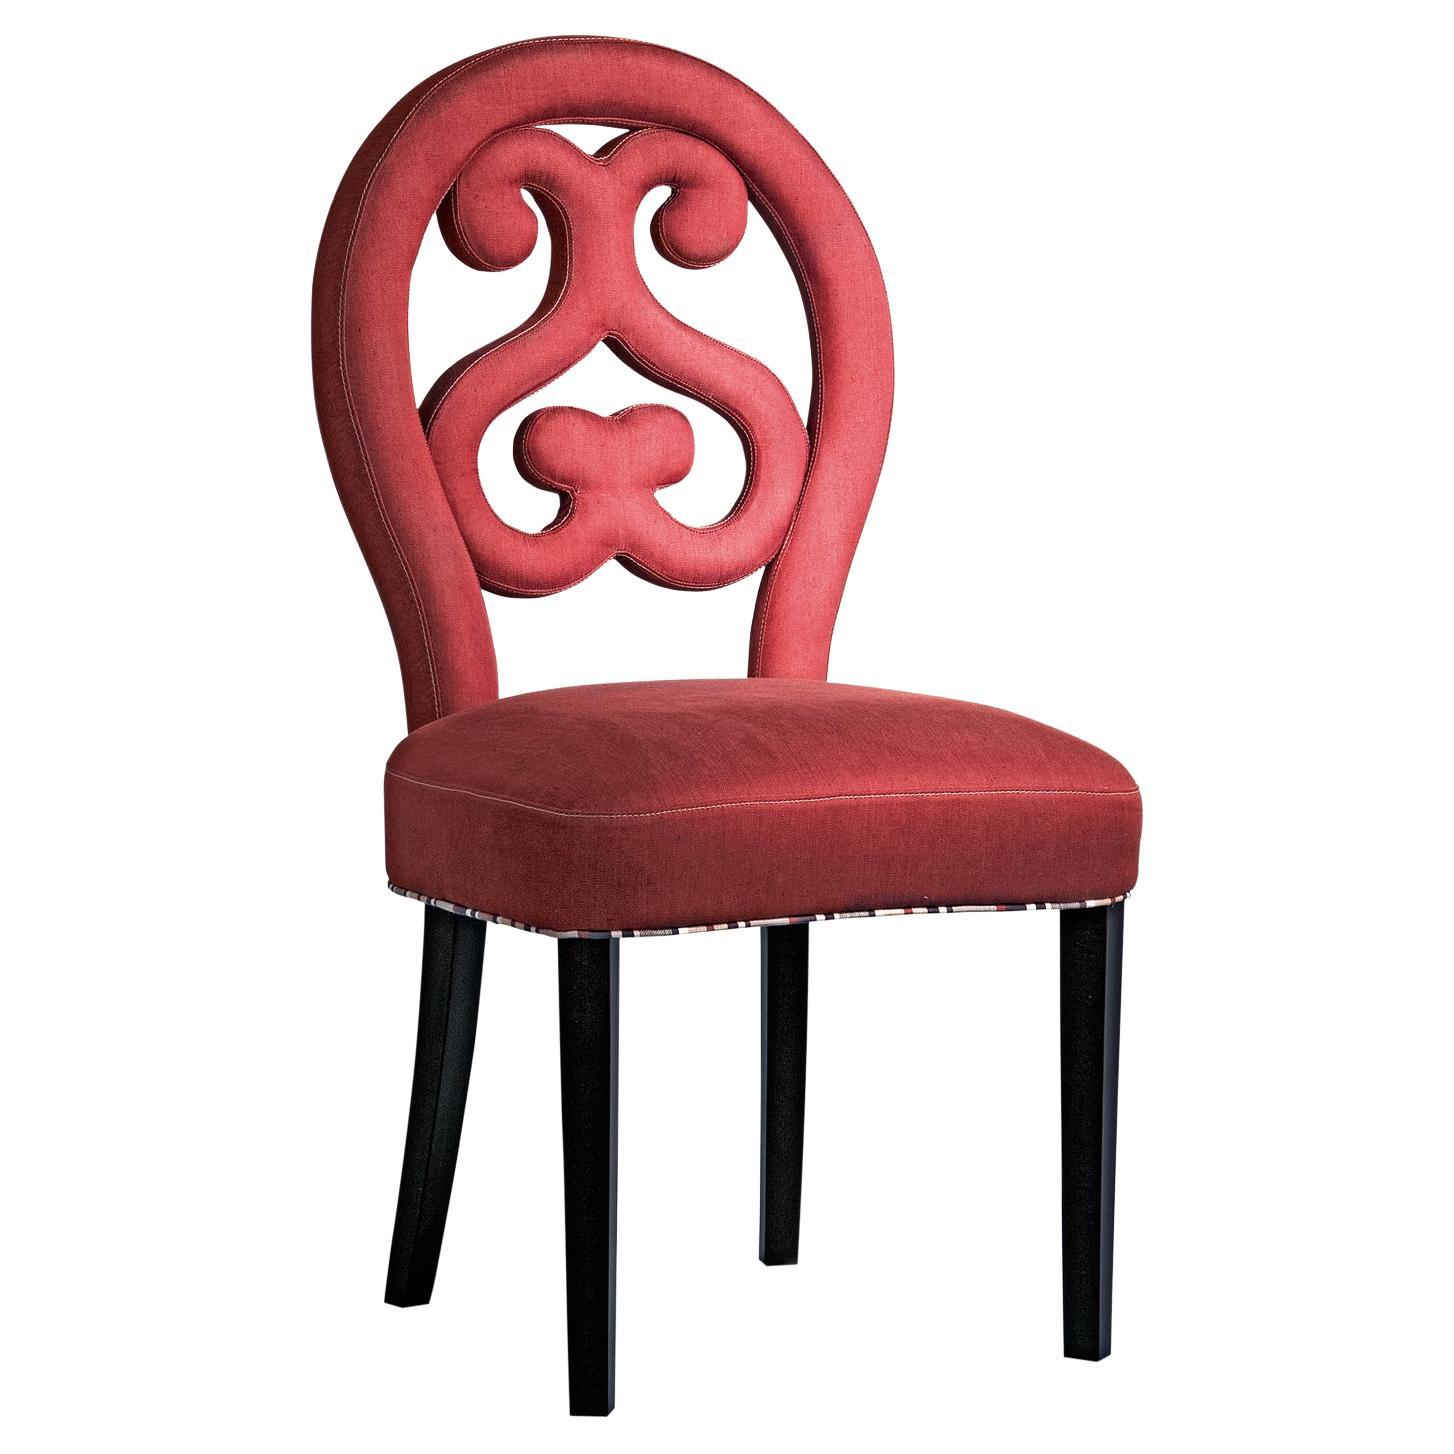 Chaise en lin et coton rouge de la collection Home du 21e siècle de Patrizia Garganti